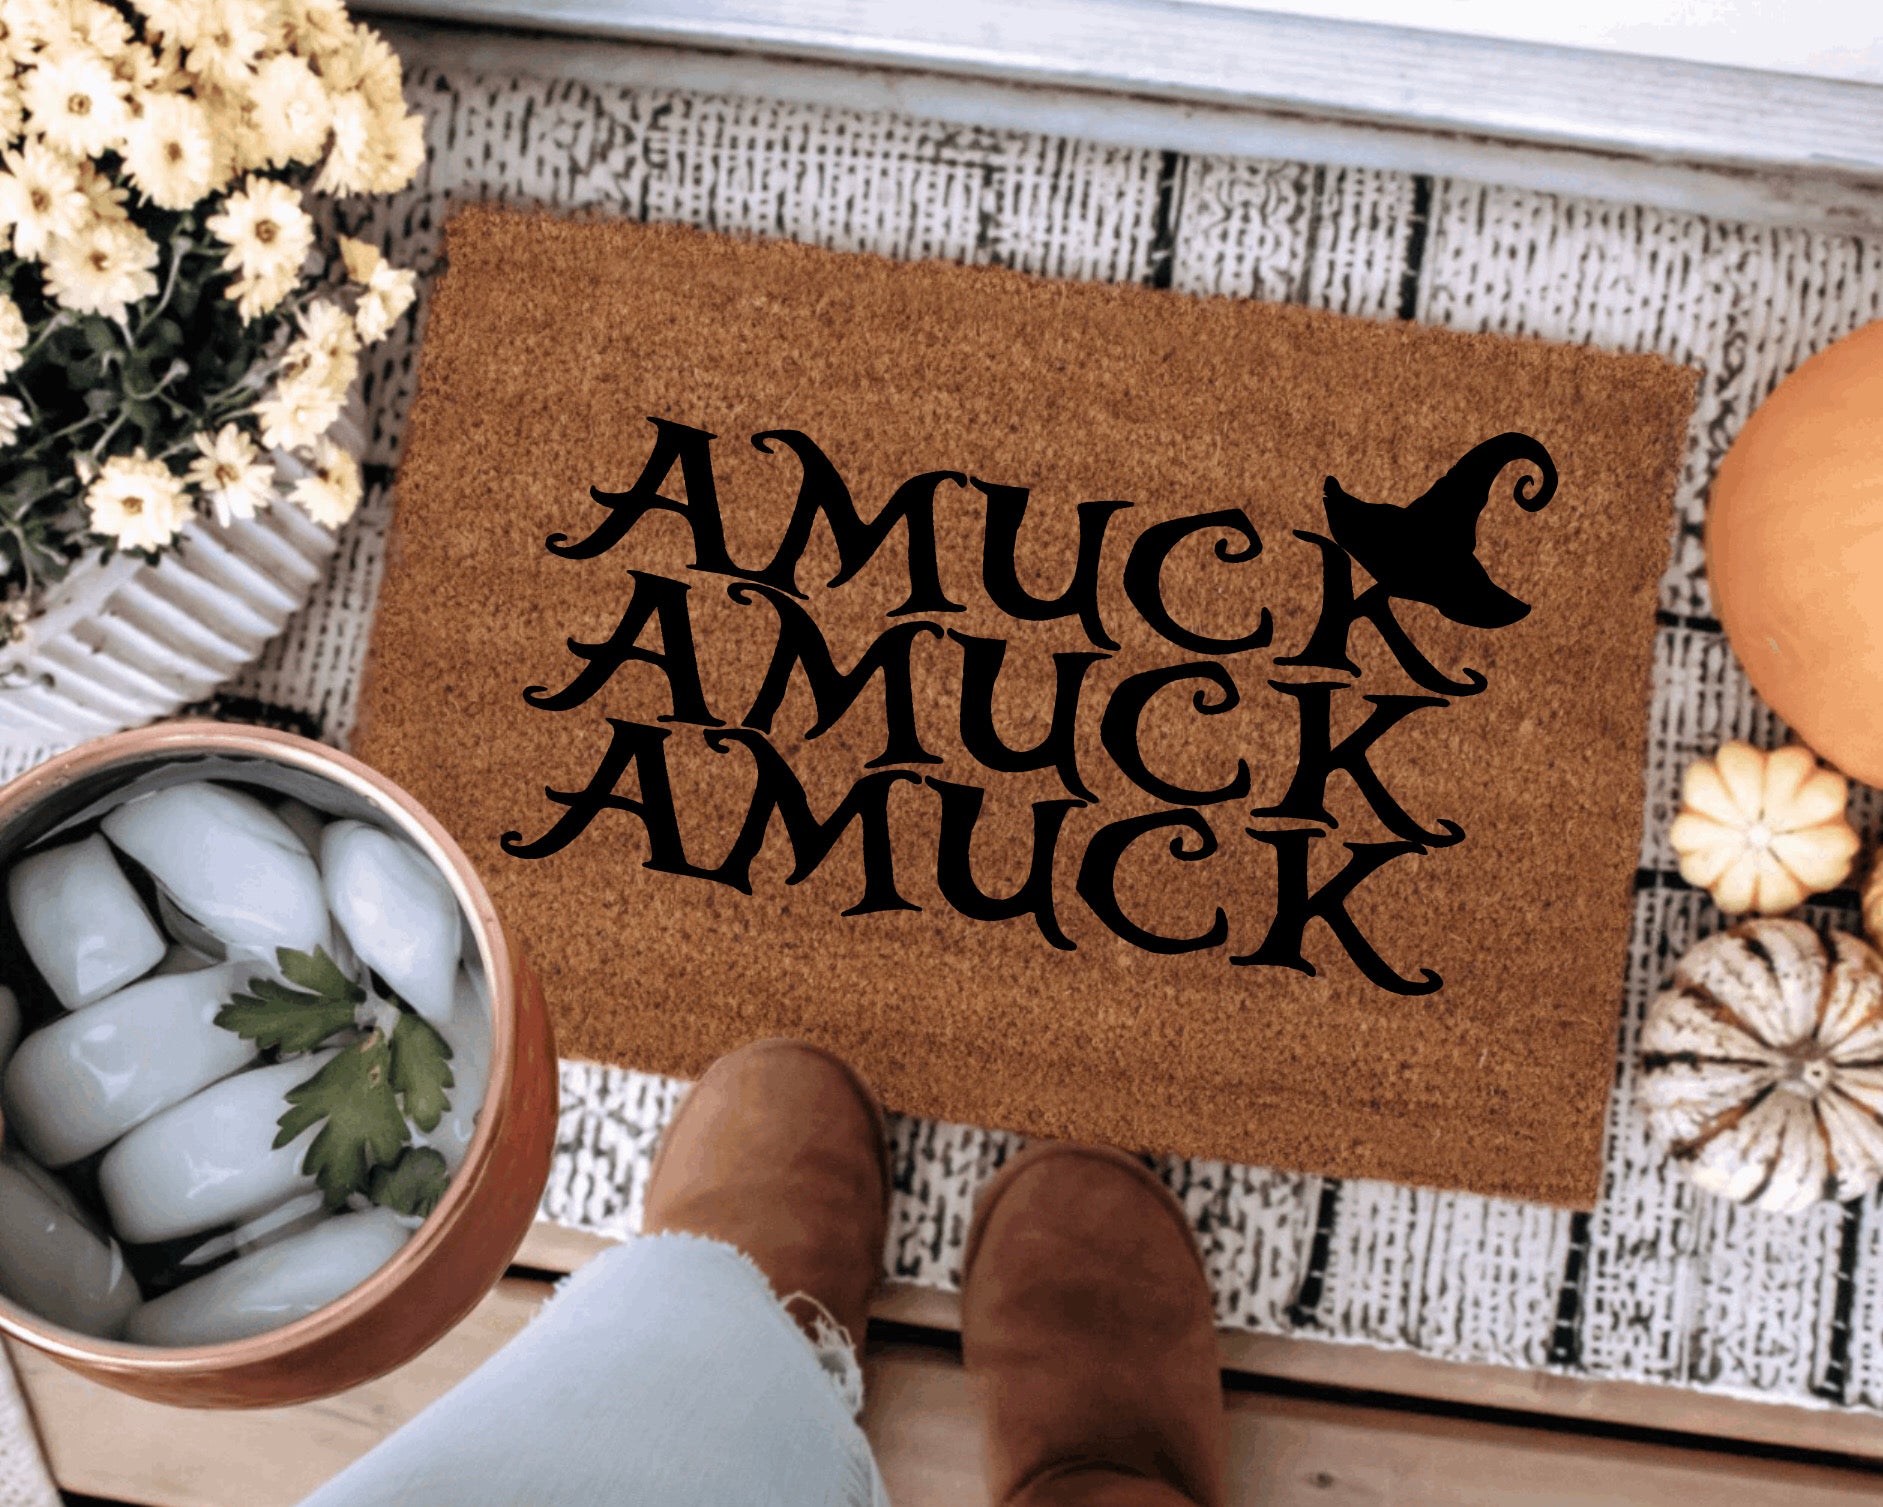 Amuck Amuck Amuck - Hocus Pocus